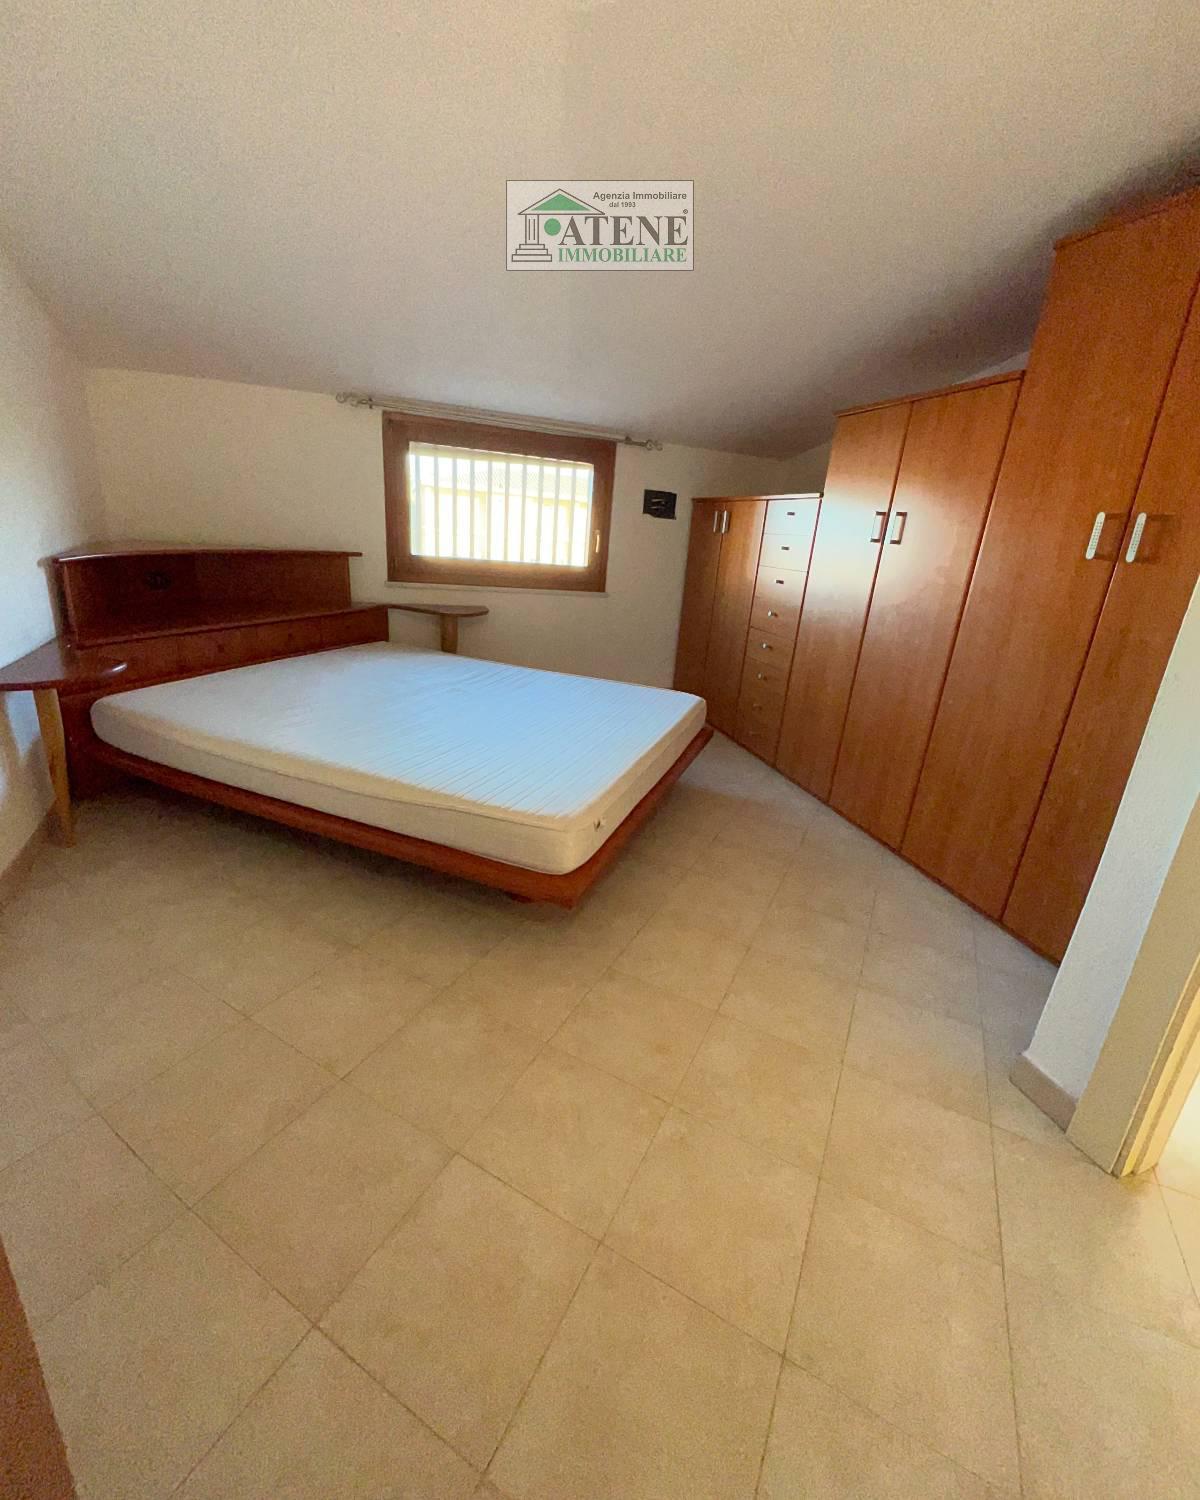 Appartamento in vendita a Selargius, 3 locali, prezzo € 115.000 | PortaleAgenzieImmobiliari.it